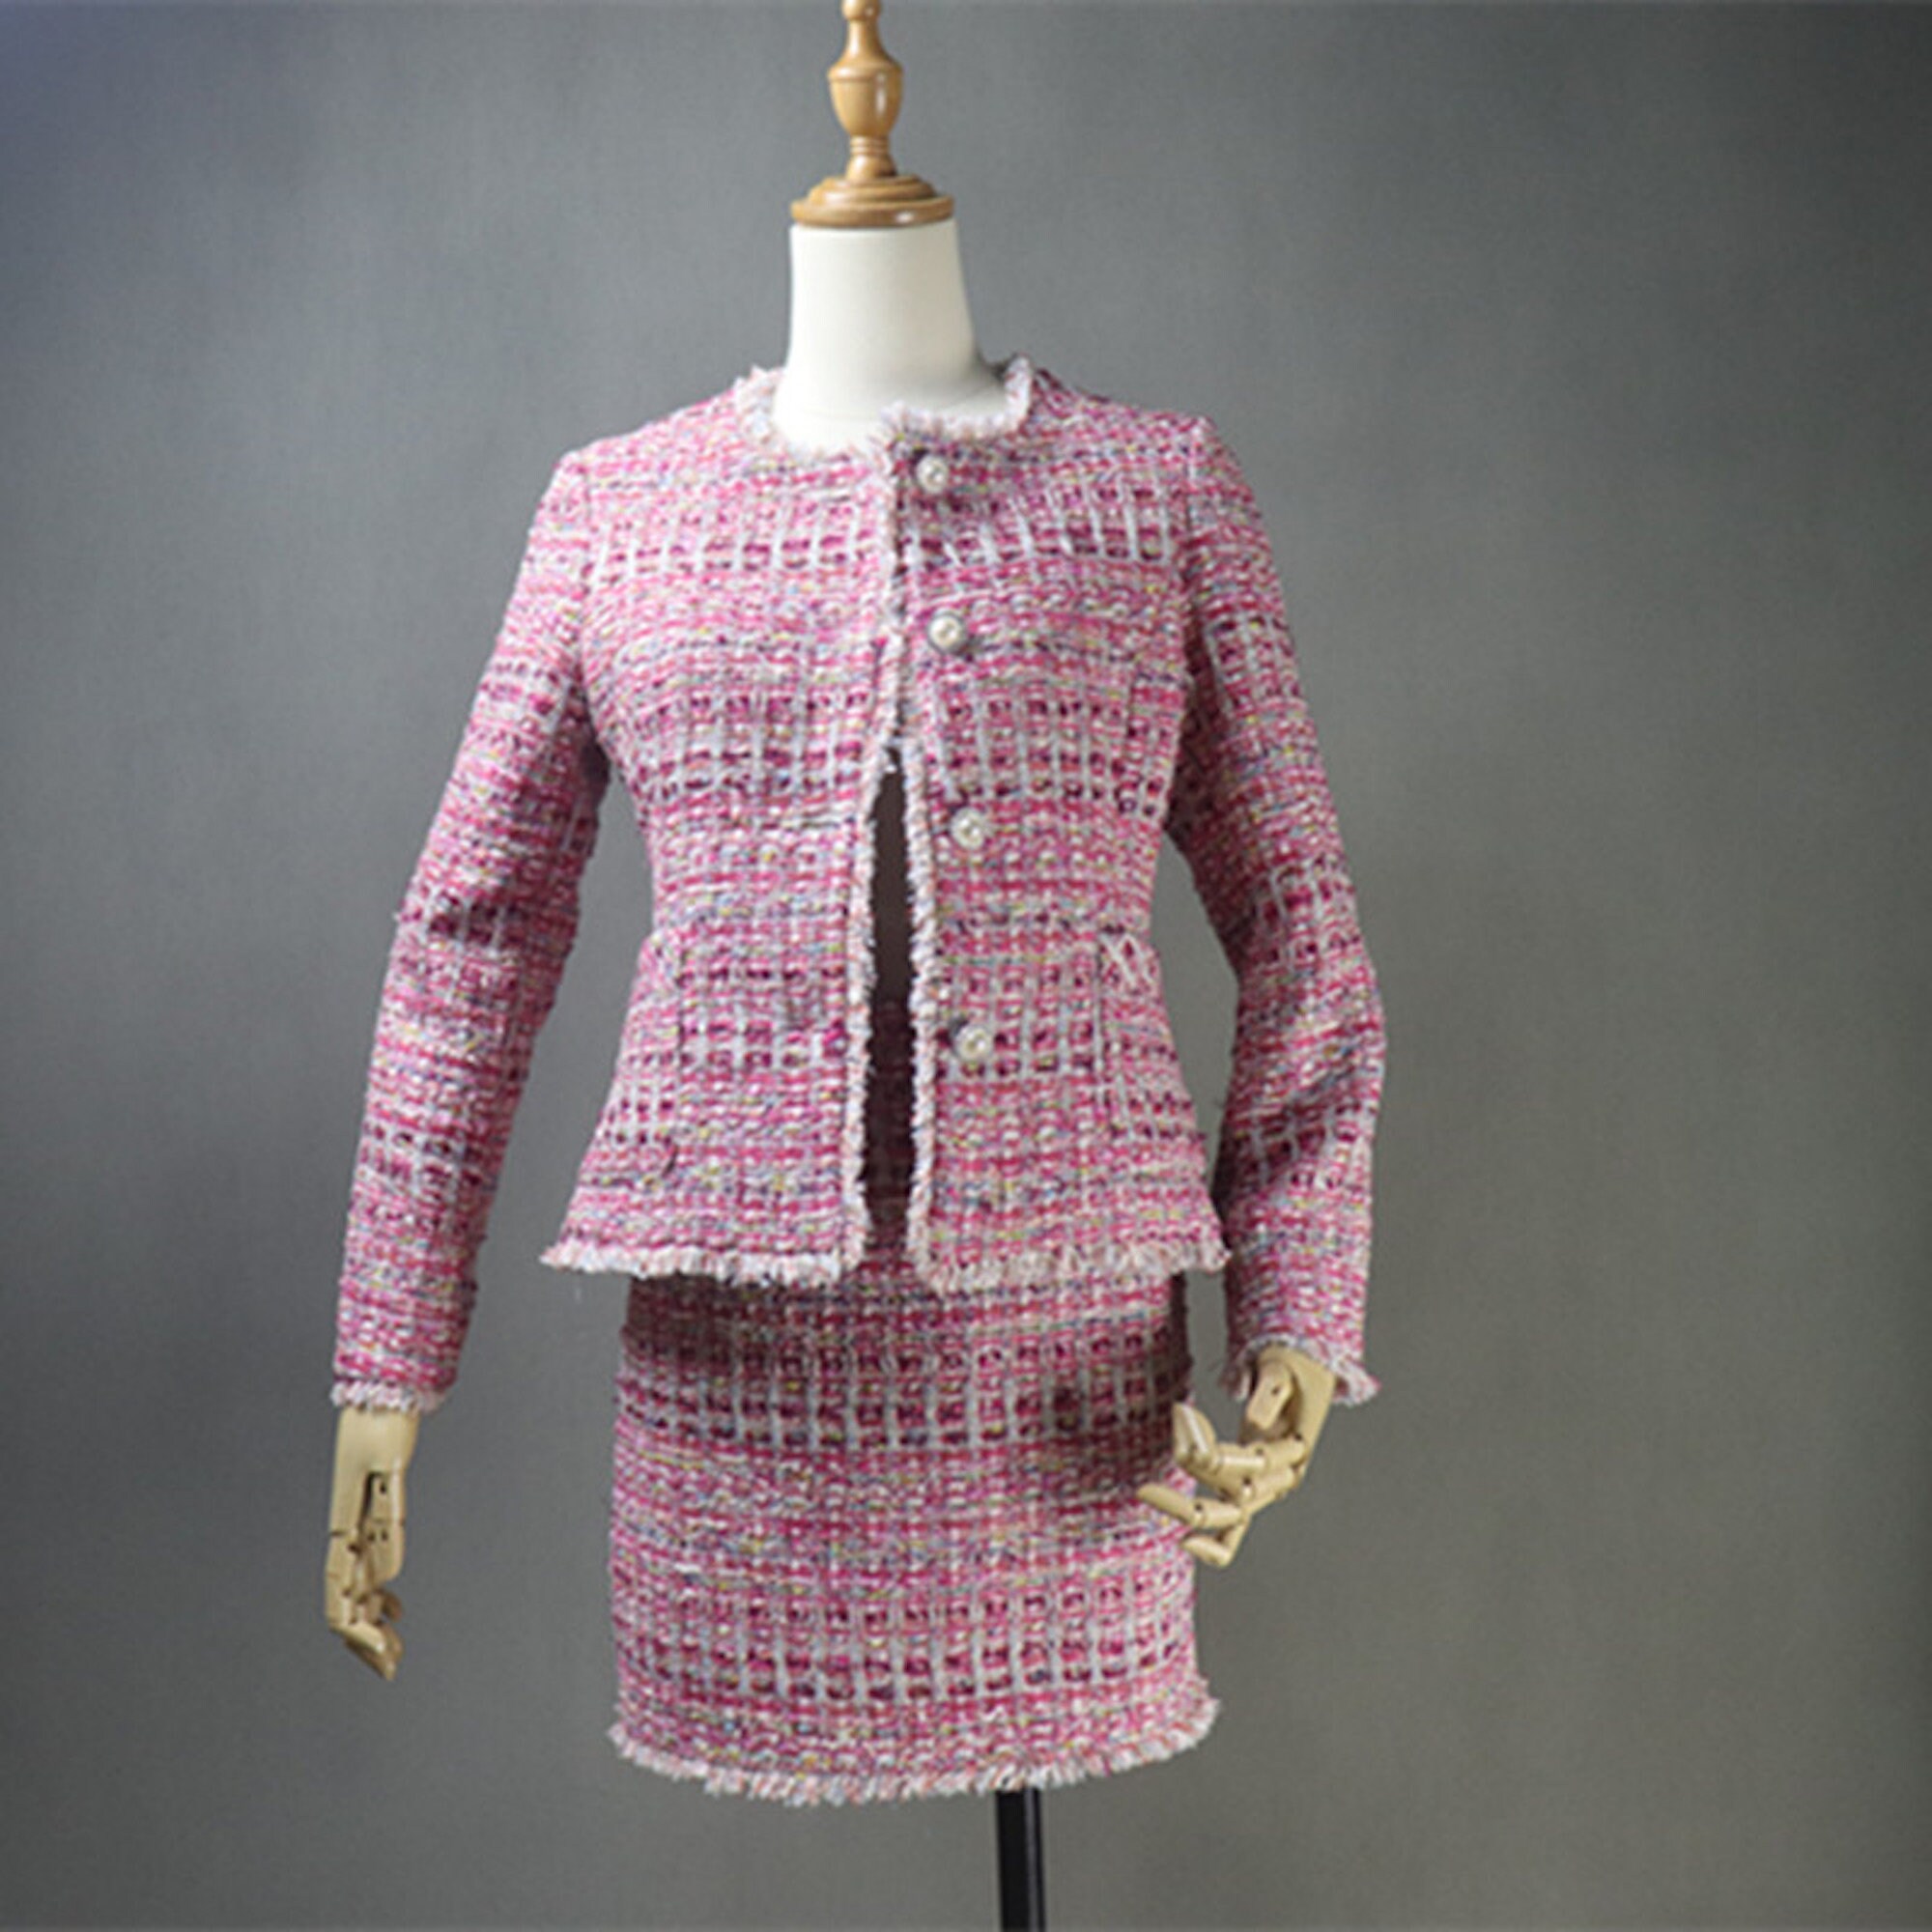 Women's Luxury Bespoke Hand Made Custom Made Tweed Blazer Skirt